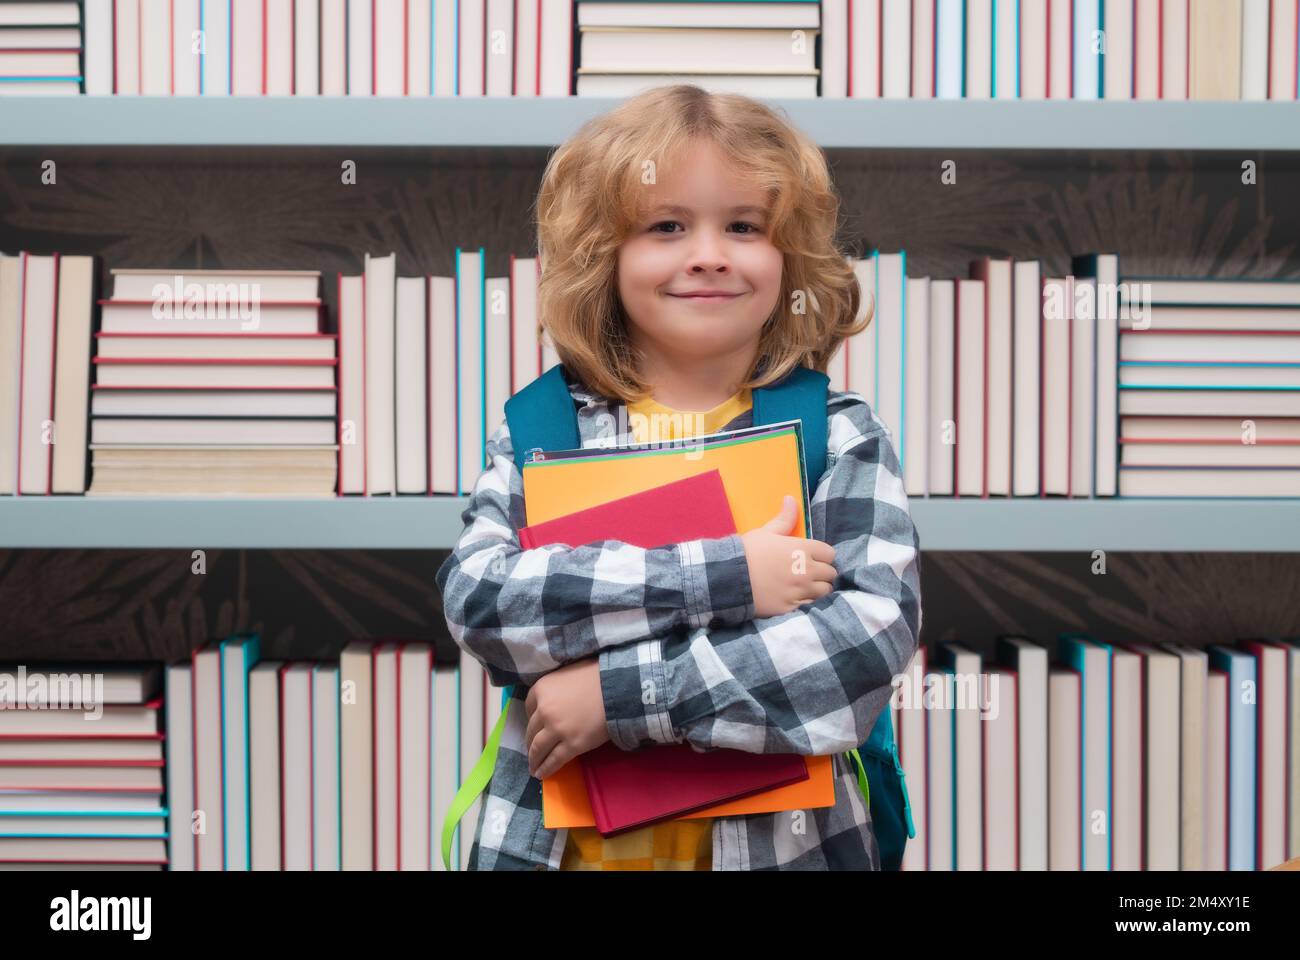 Garçon d'école avec des livres dans la bibliothèque. Concept d'école et d'éducation. Portrait d'un enfant garçon scolaire mignon. Retour à l'école. Banque D'Images